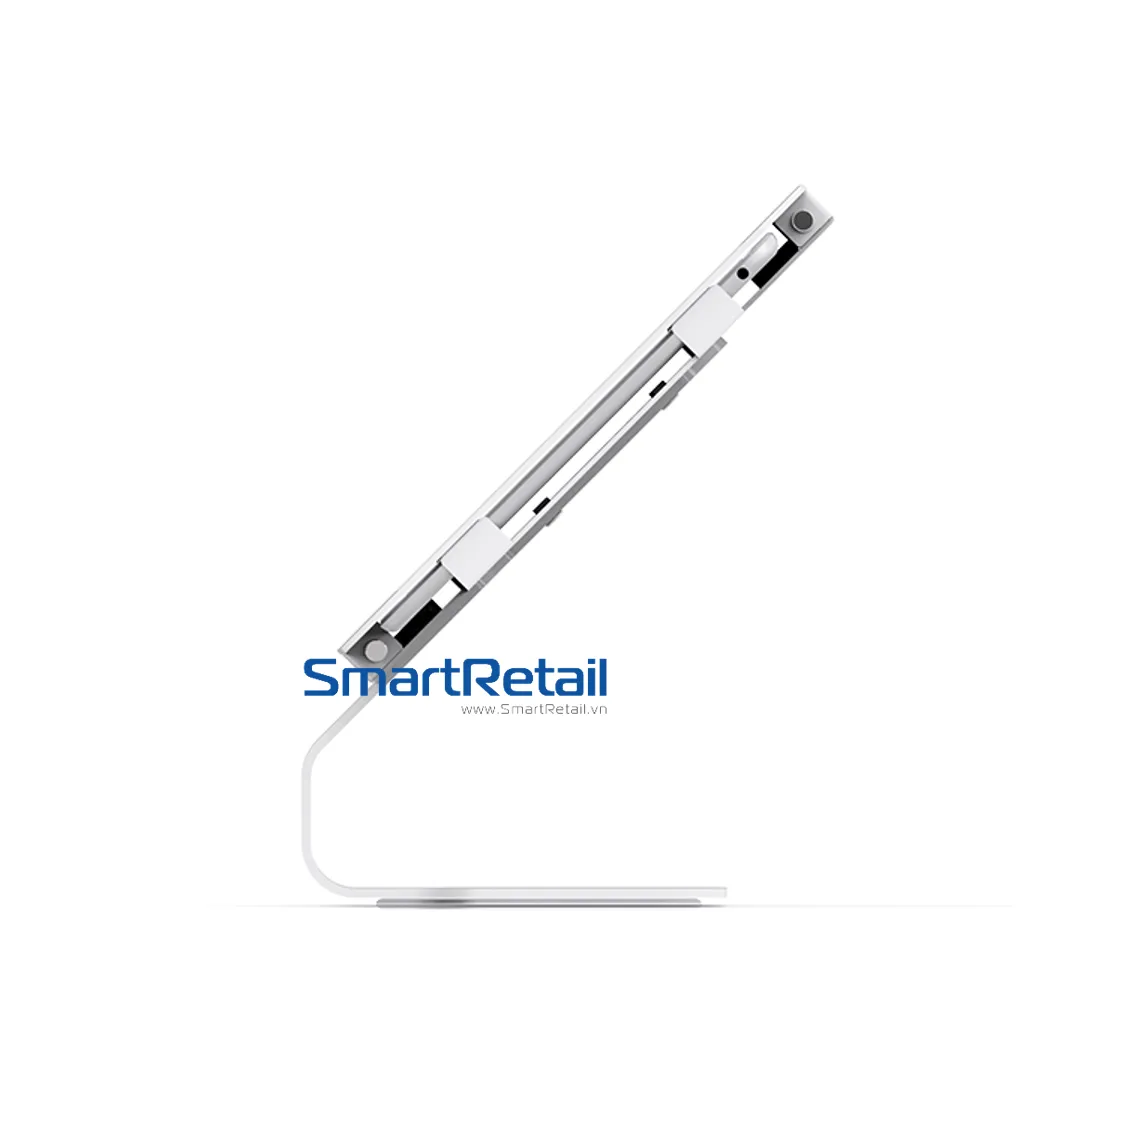 SmartRetail Thiet bi bao ve Tablet SC101 3